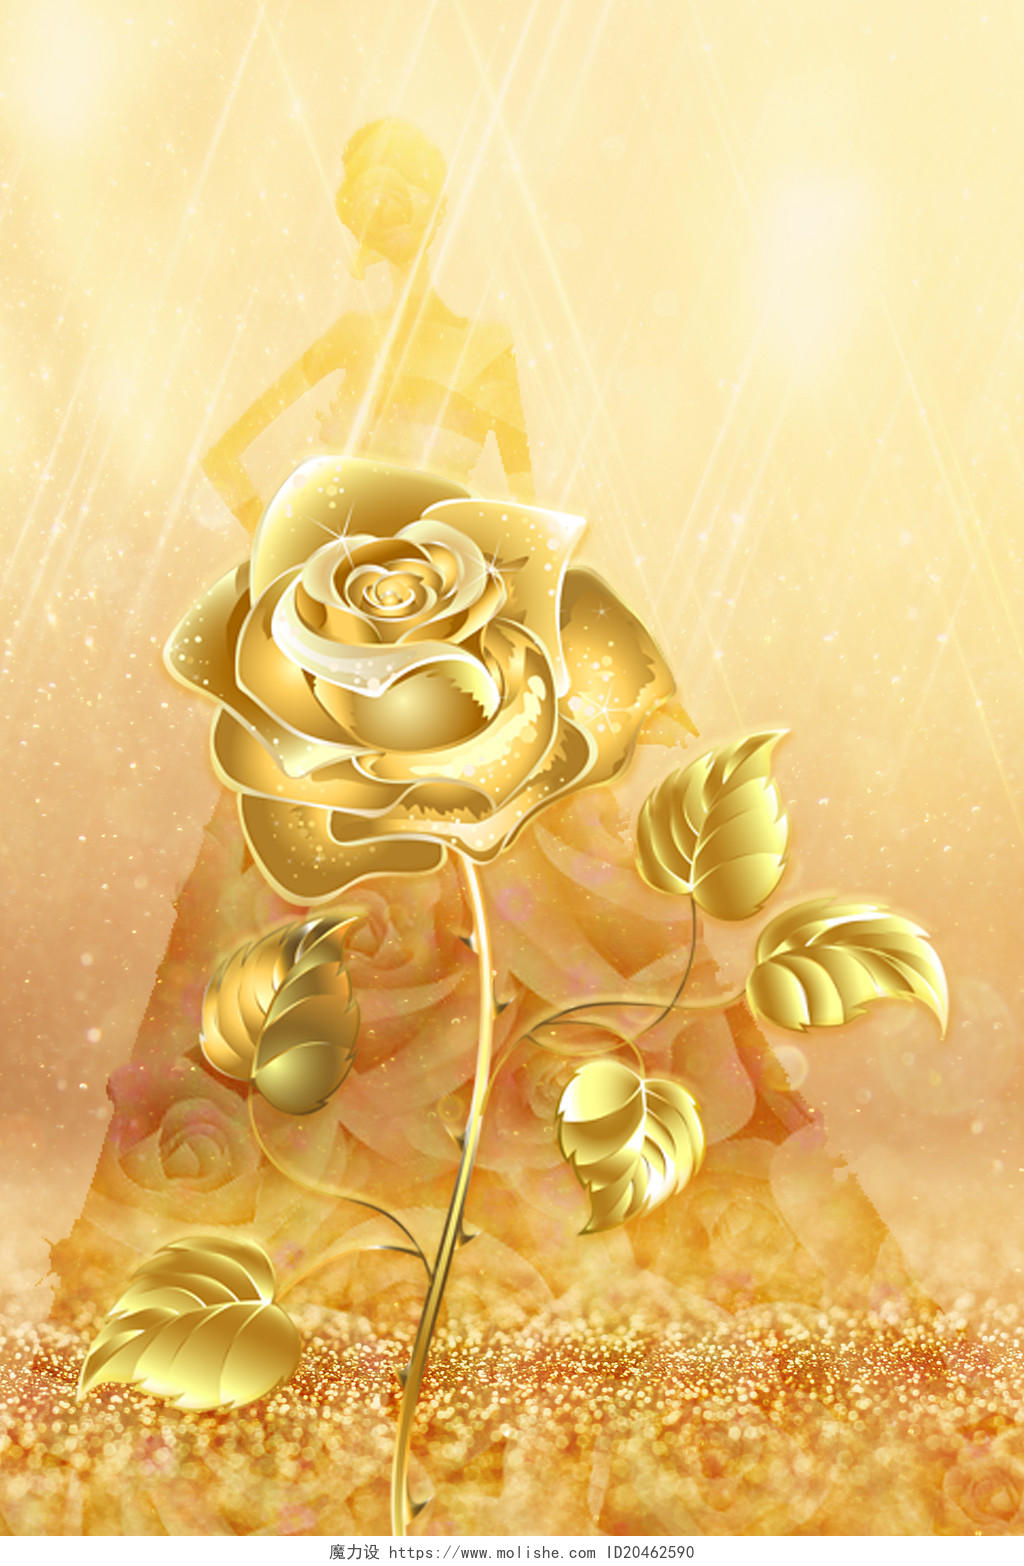 金色高端创意女人人物剪影花朵鲜花玫瑰花海报背景鲜花背景